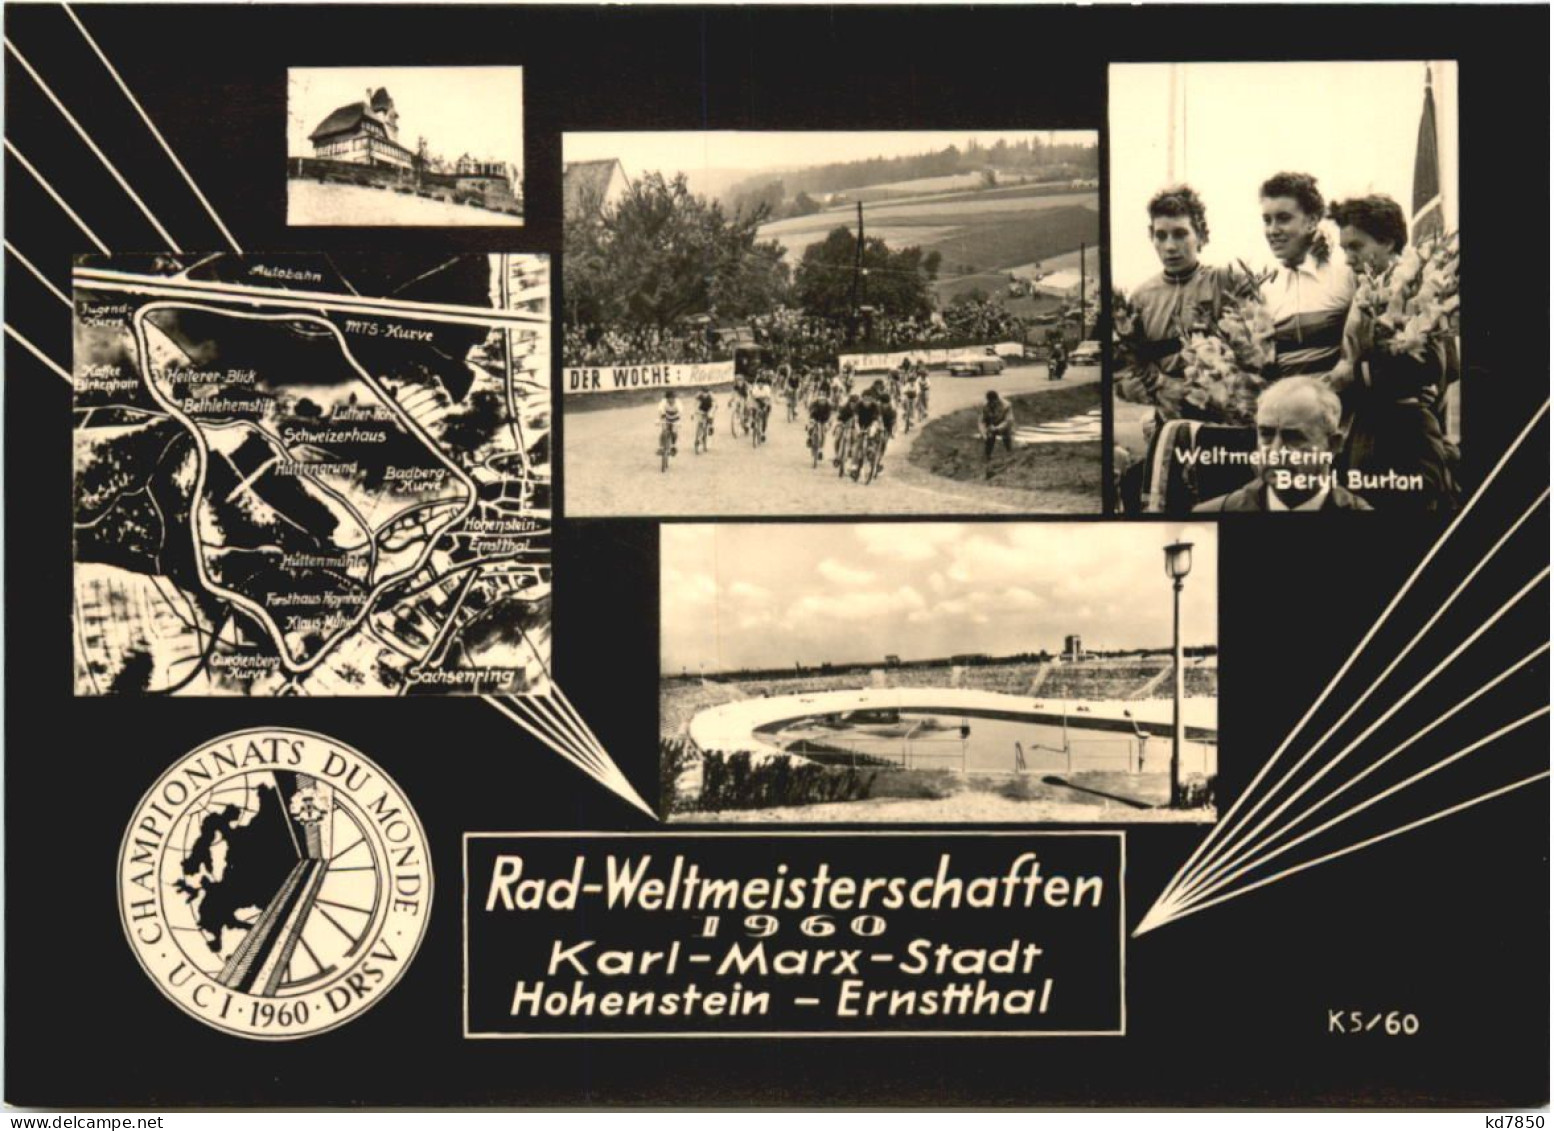 Rad Weltmeisterschaft 1960 - Karl-Marx-stadt - Chemnitz (Karl-Marx-Stadt 1953-1990)